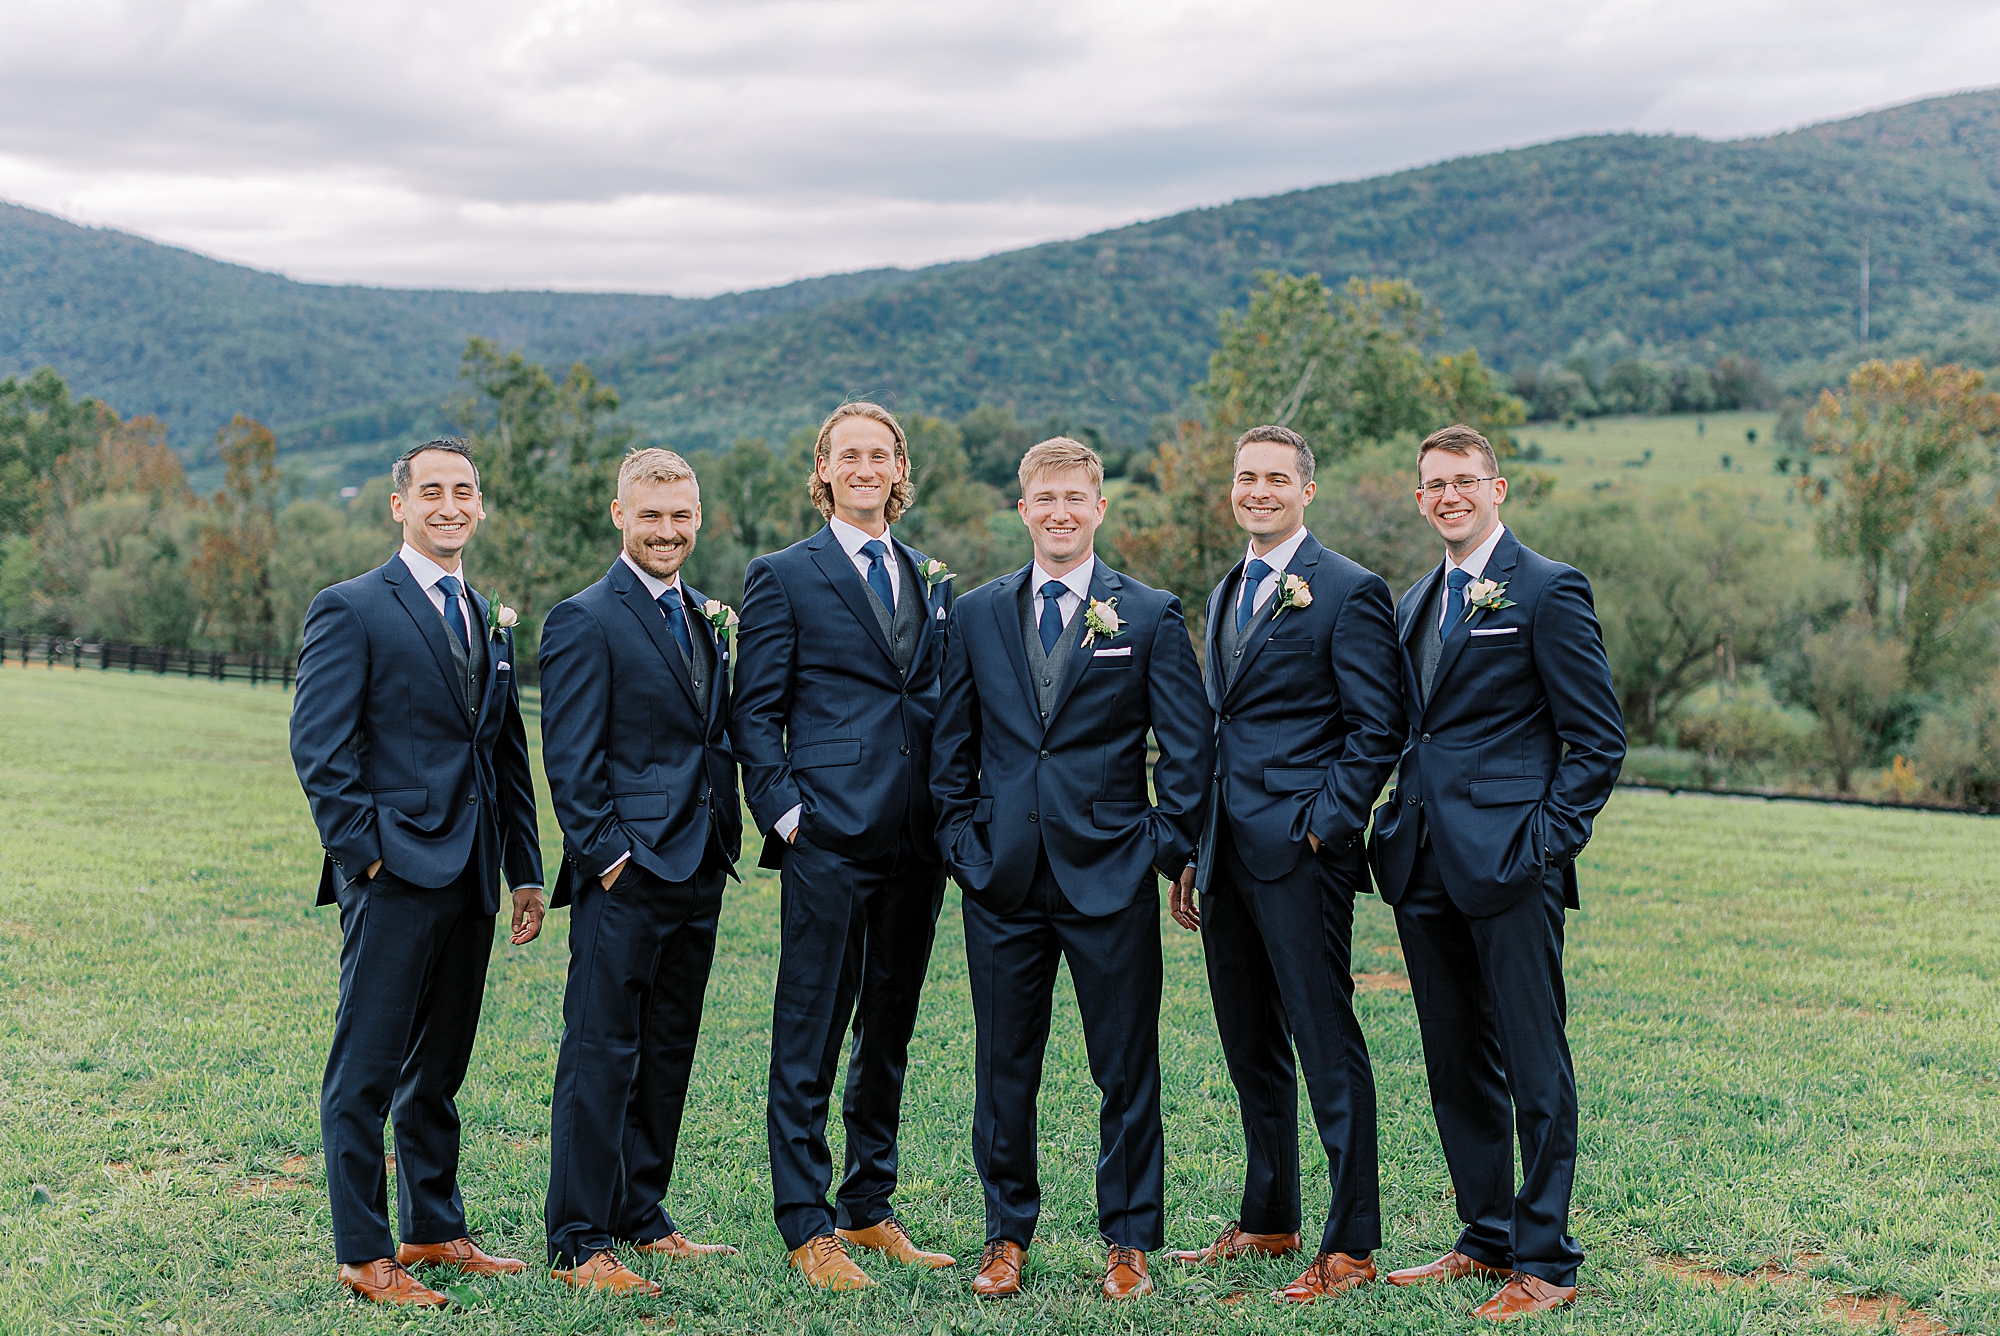 Groom and groomsmen in blue suits.